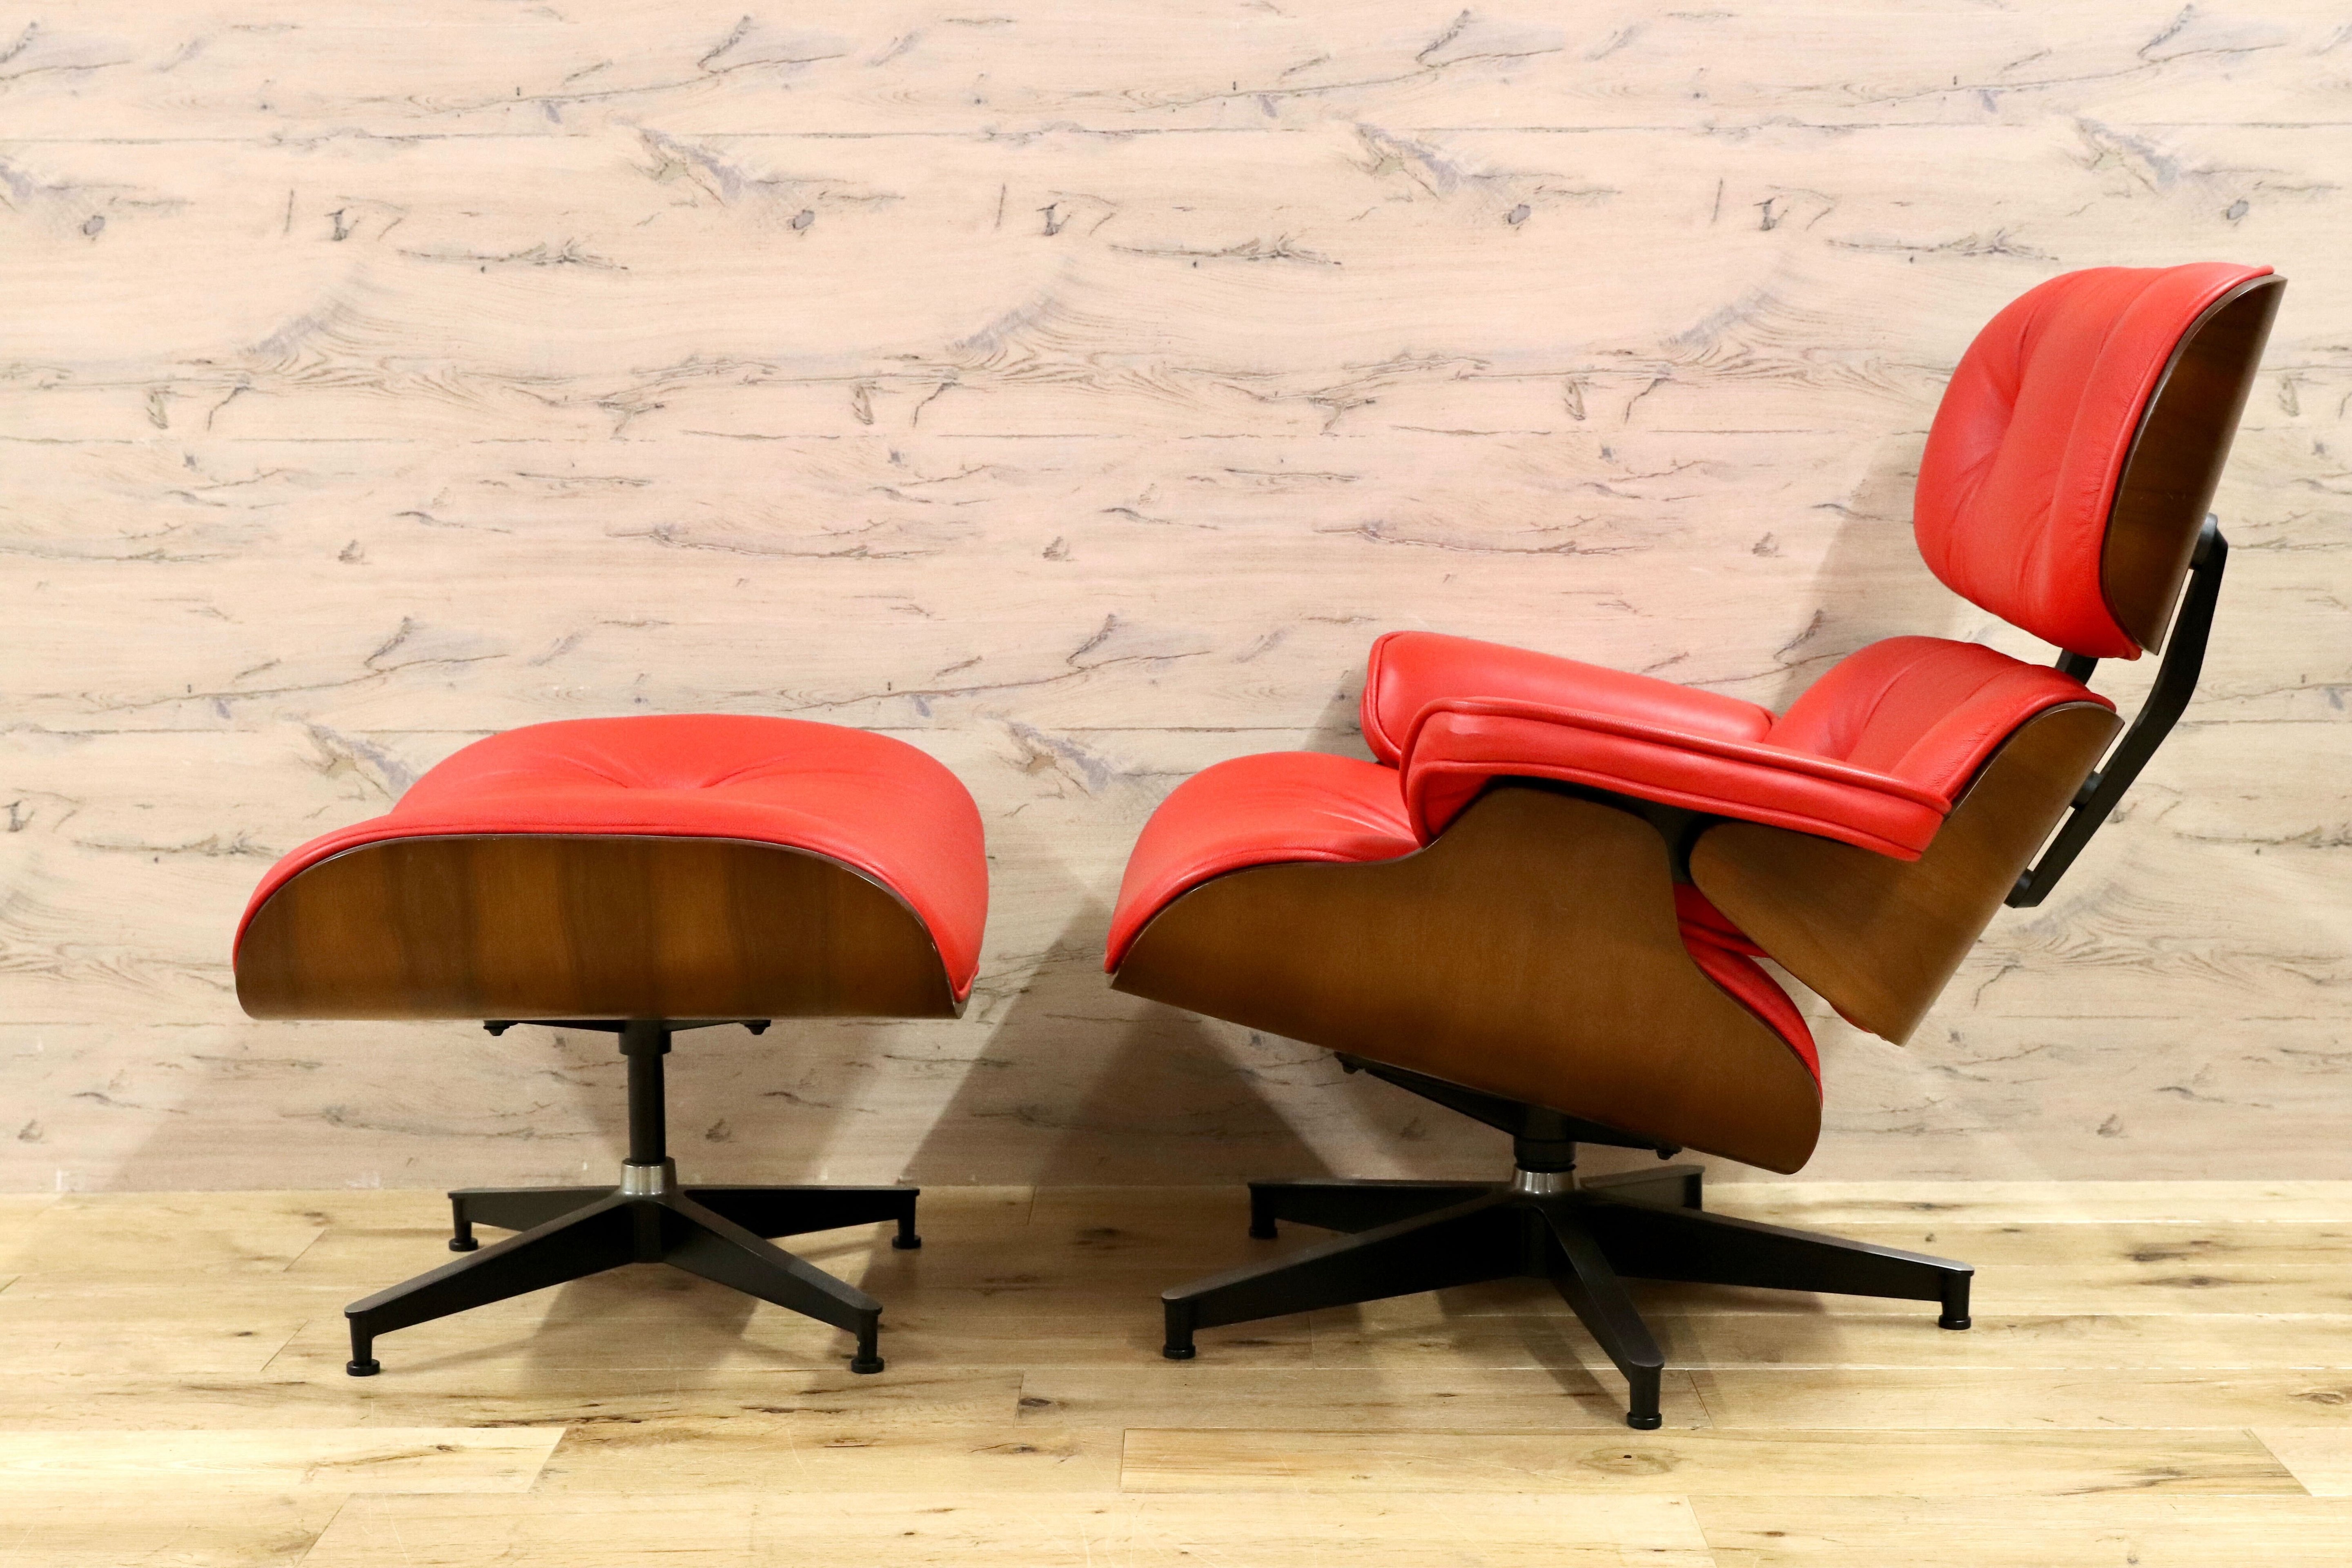 GMGS122○イームズ ラウンジチェア&オットマン 赤 本革 リプロダクト チャールズ&レイ ミッドセンチュリー 名作 椅子 約22万 展示品